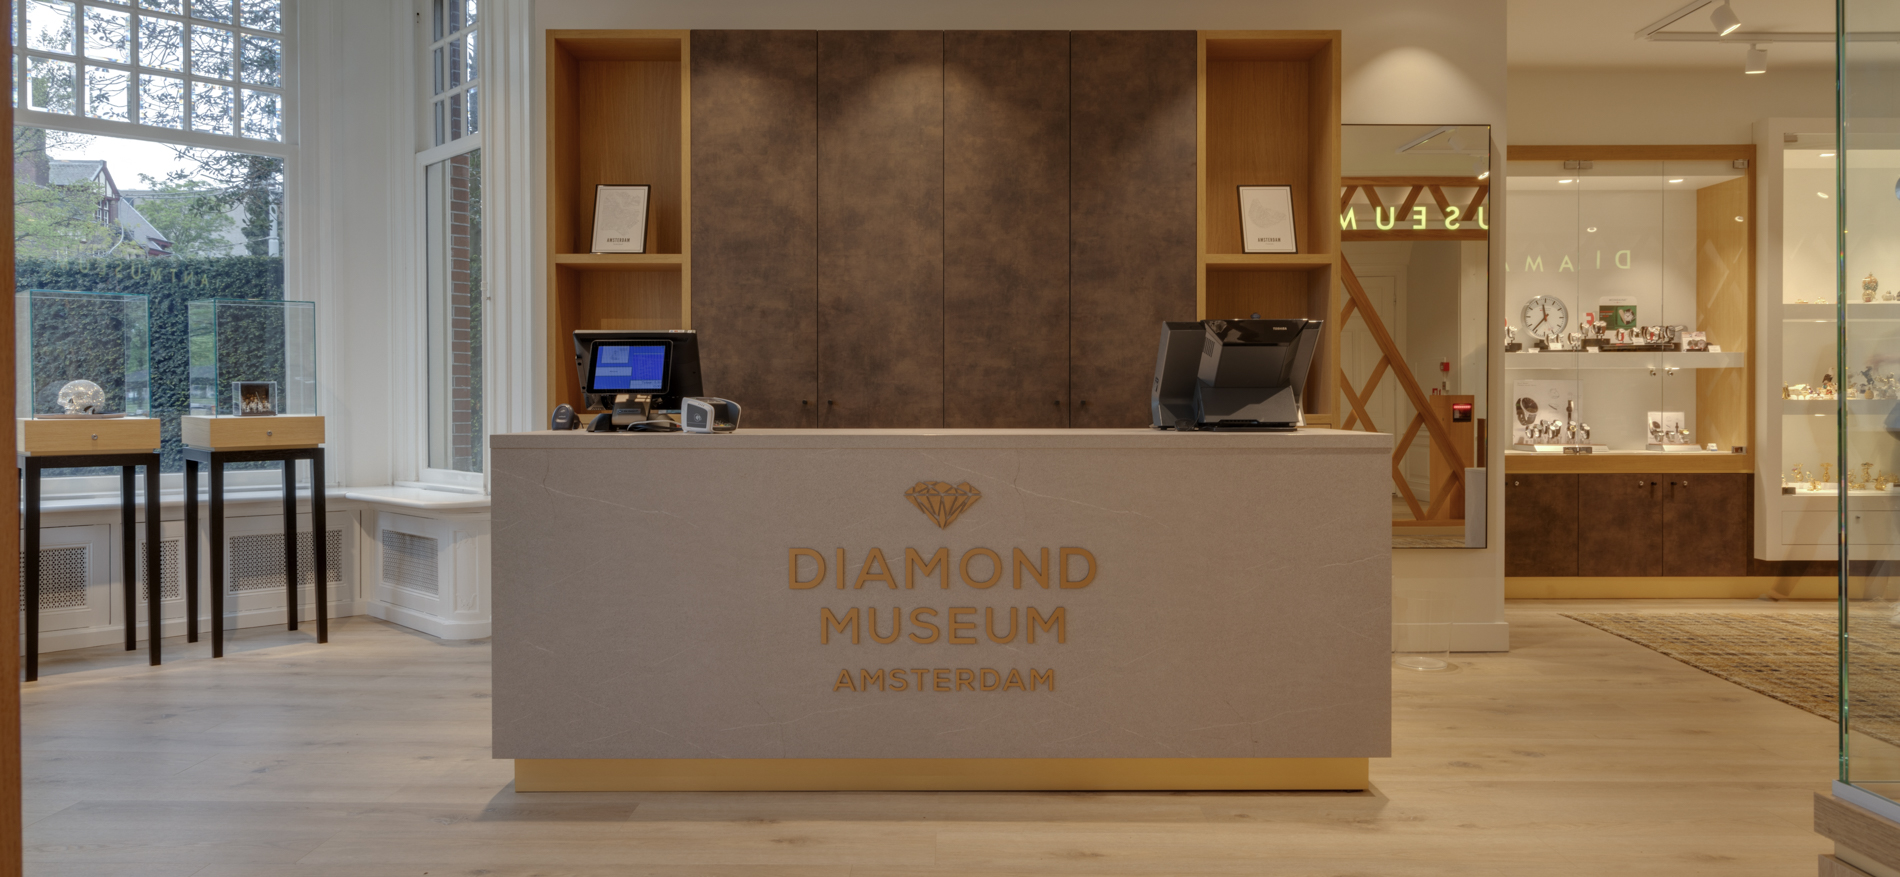 Diamond Museum | Amsterdam (NL) - Jeweler